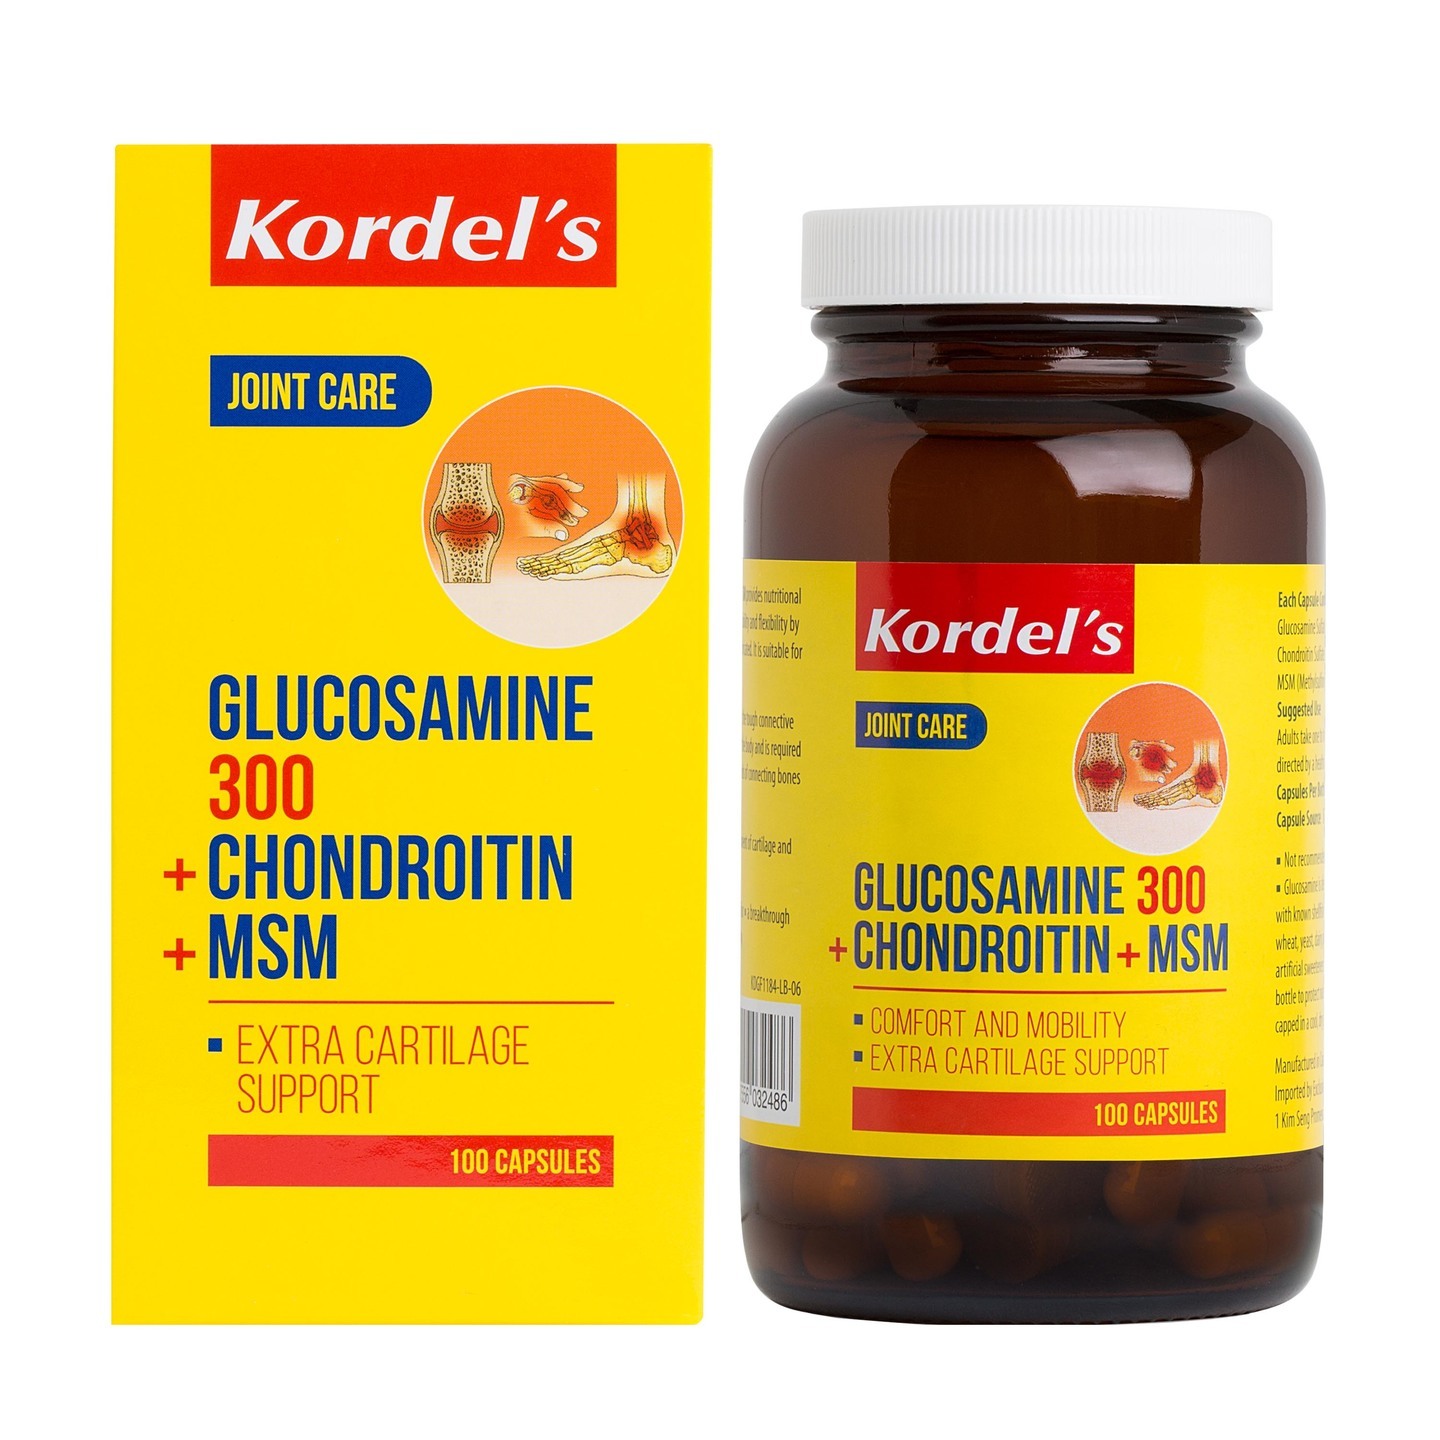 GLUCOSAMINE 300 + CHONDROITIN + MSM 100s